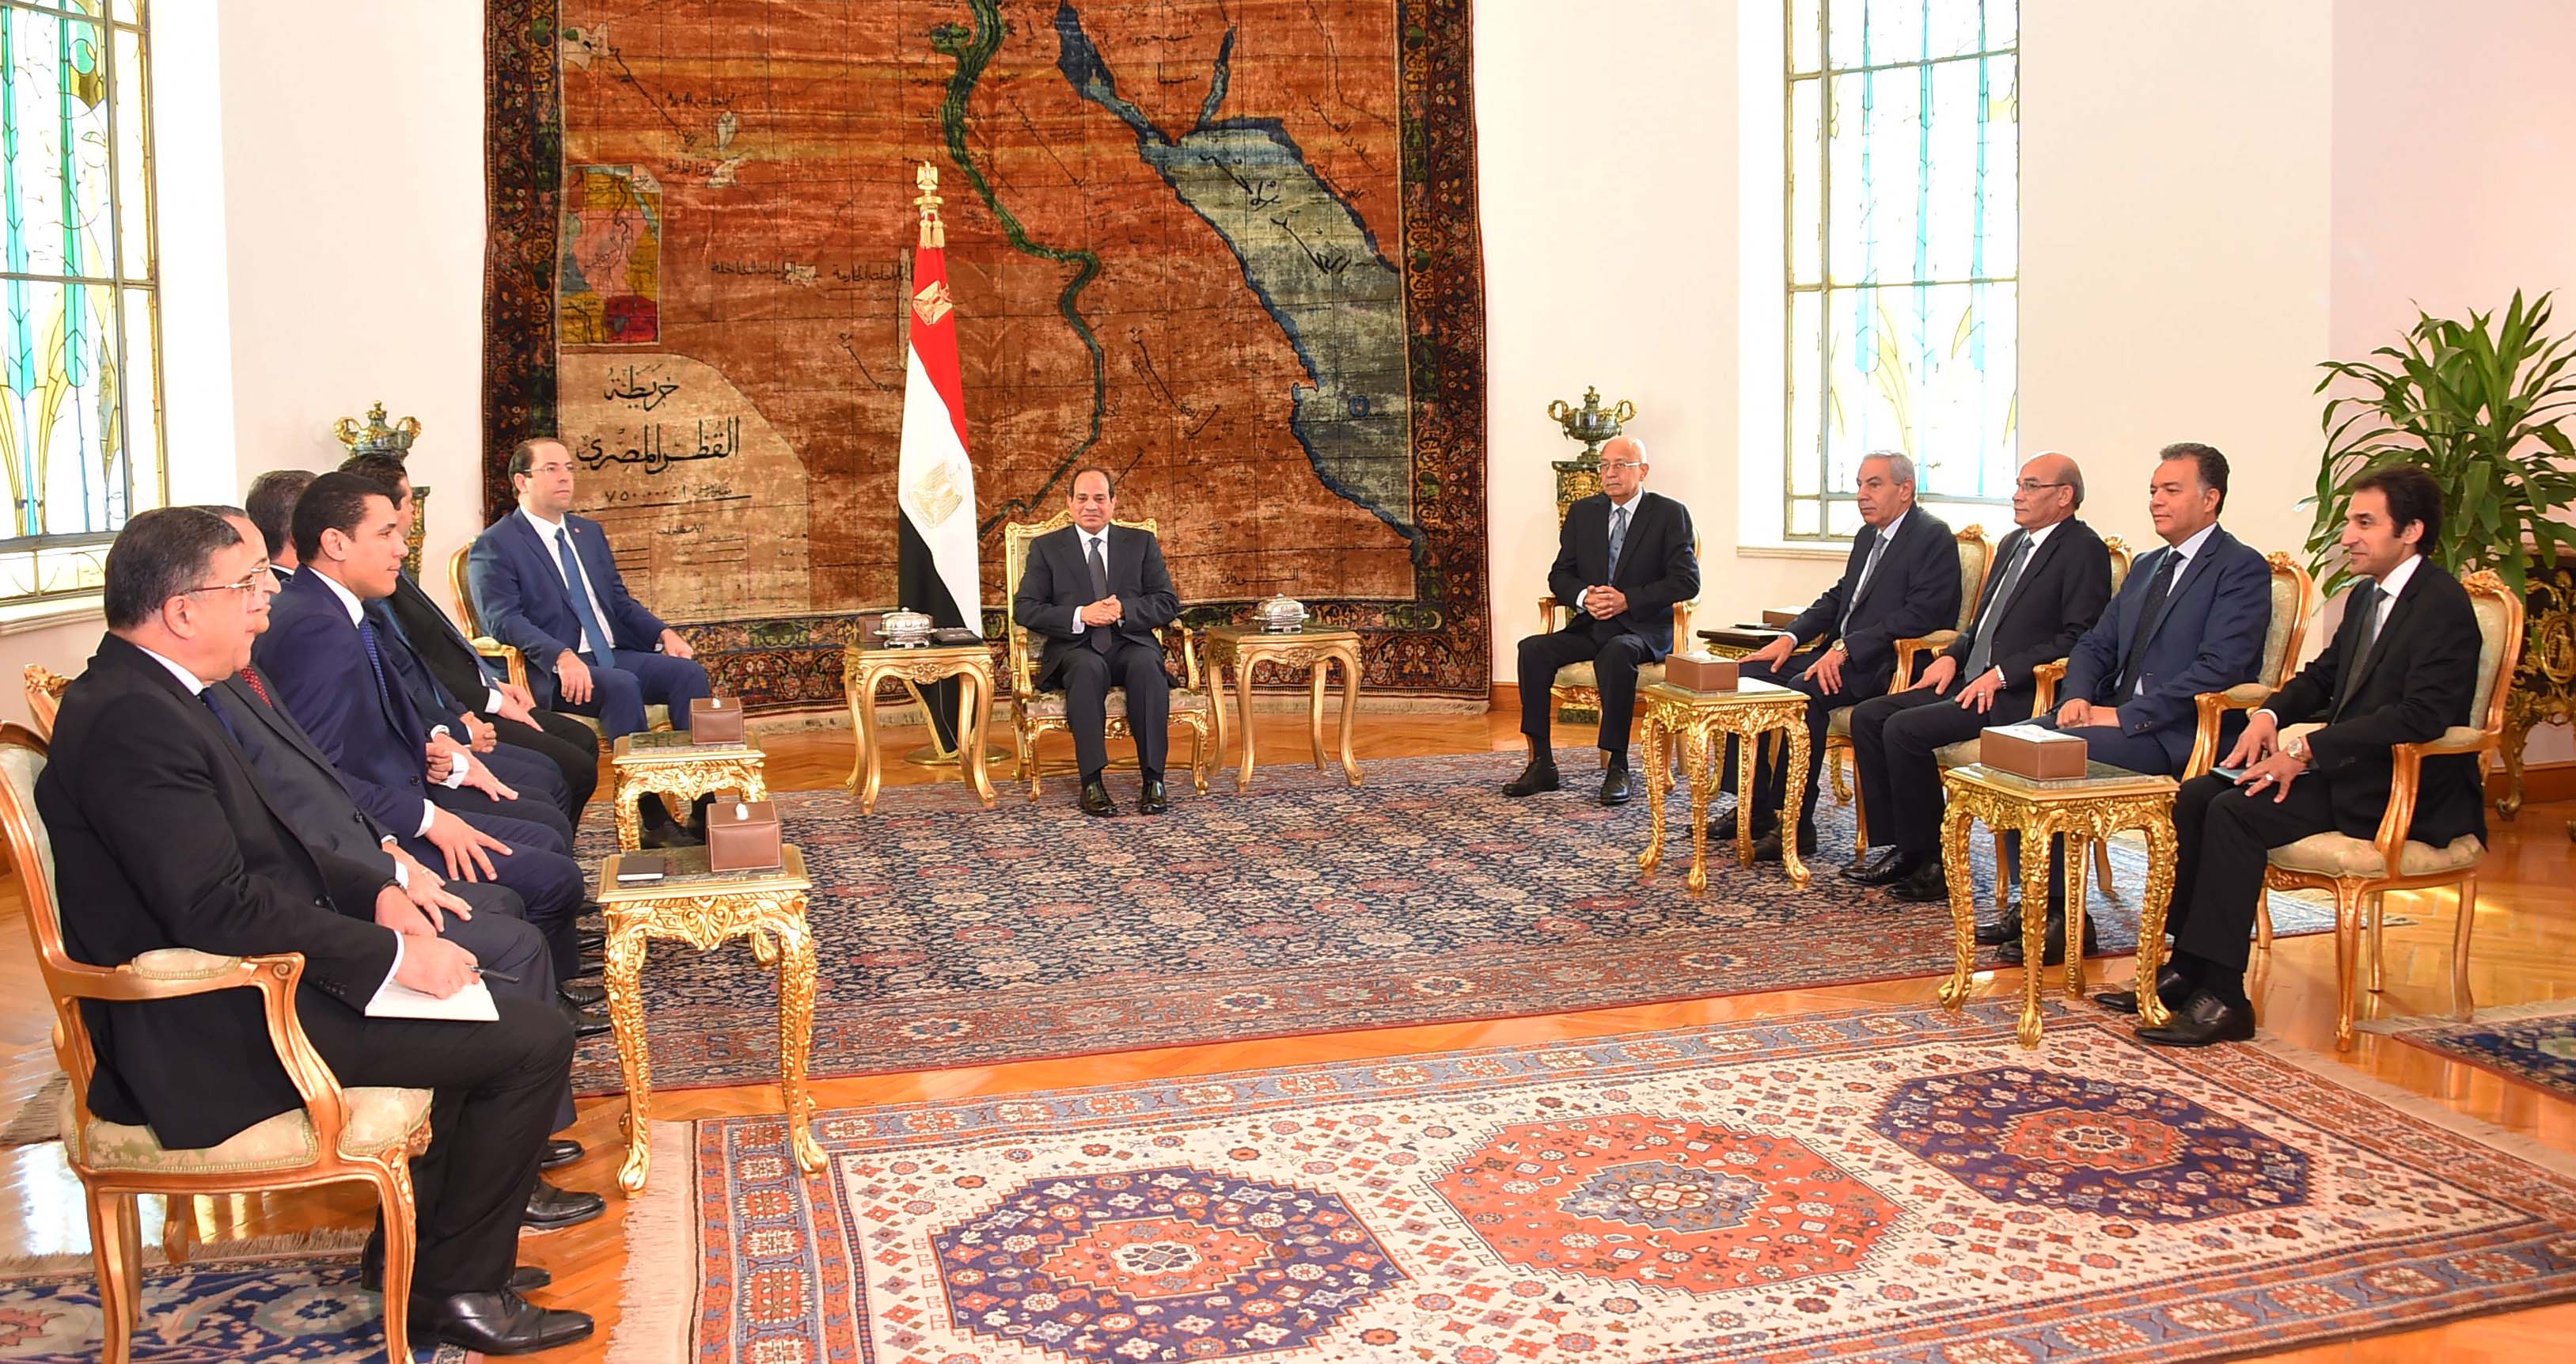 الرئيس المصري عبد الفتاح السيسي يلتقي مع رئيس الحكومة التونسية يوسف الشاهد